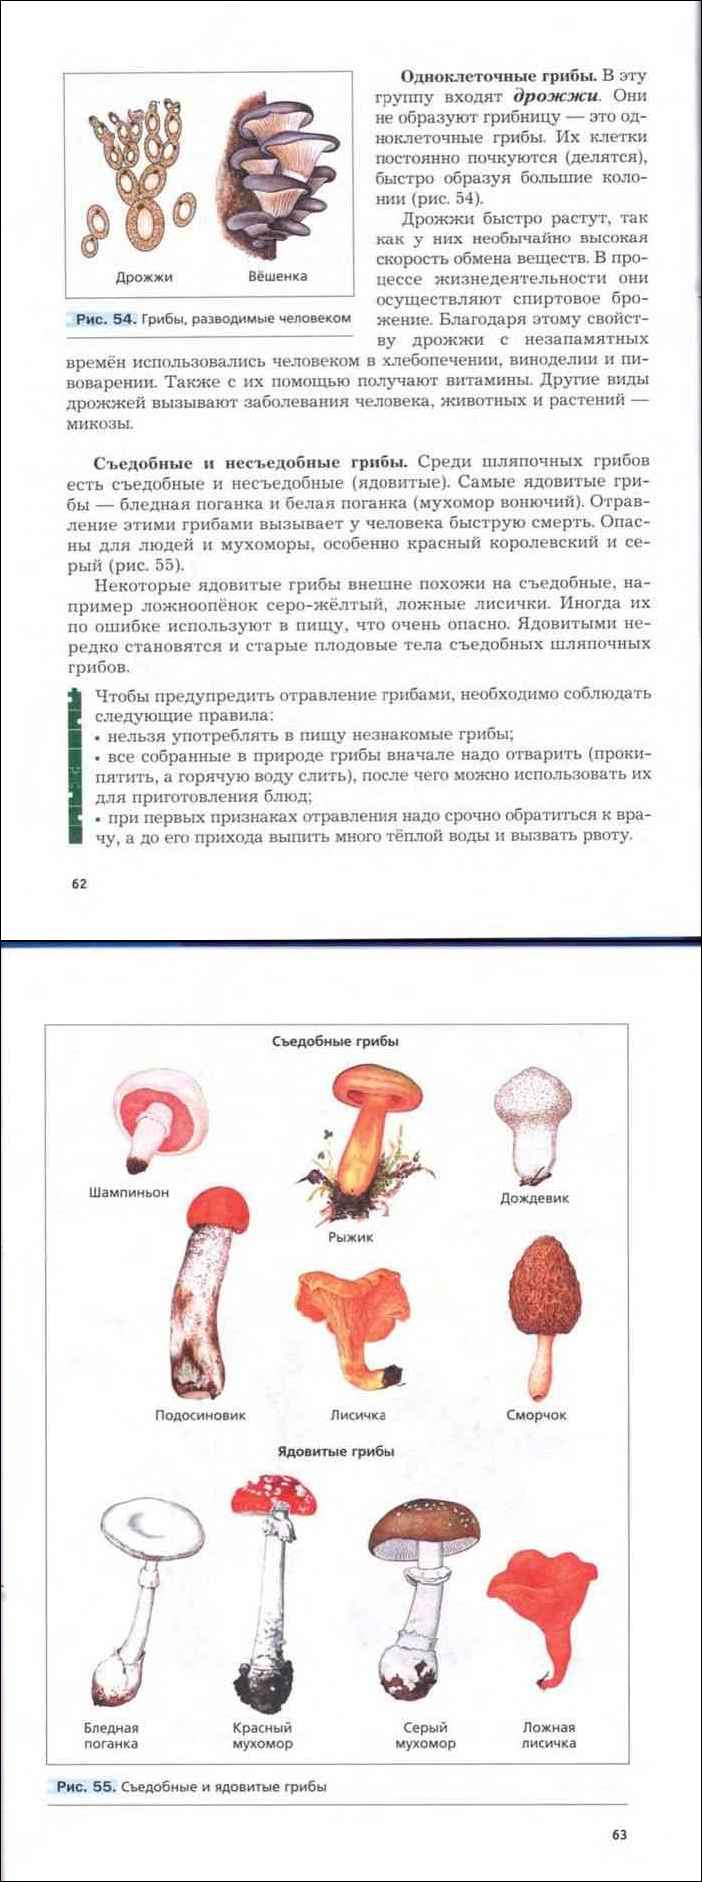 Гриб лепиота ядовитая: фото лепиоты каштановой, шероховатой и гребенчатой с описанием